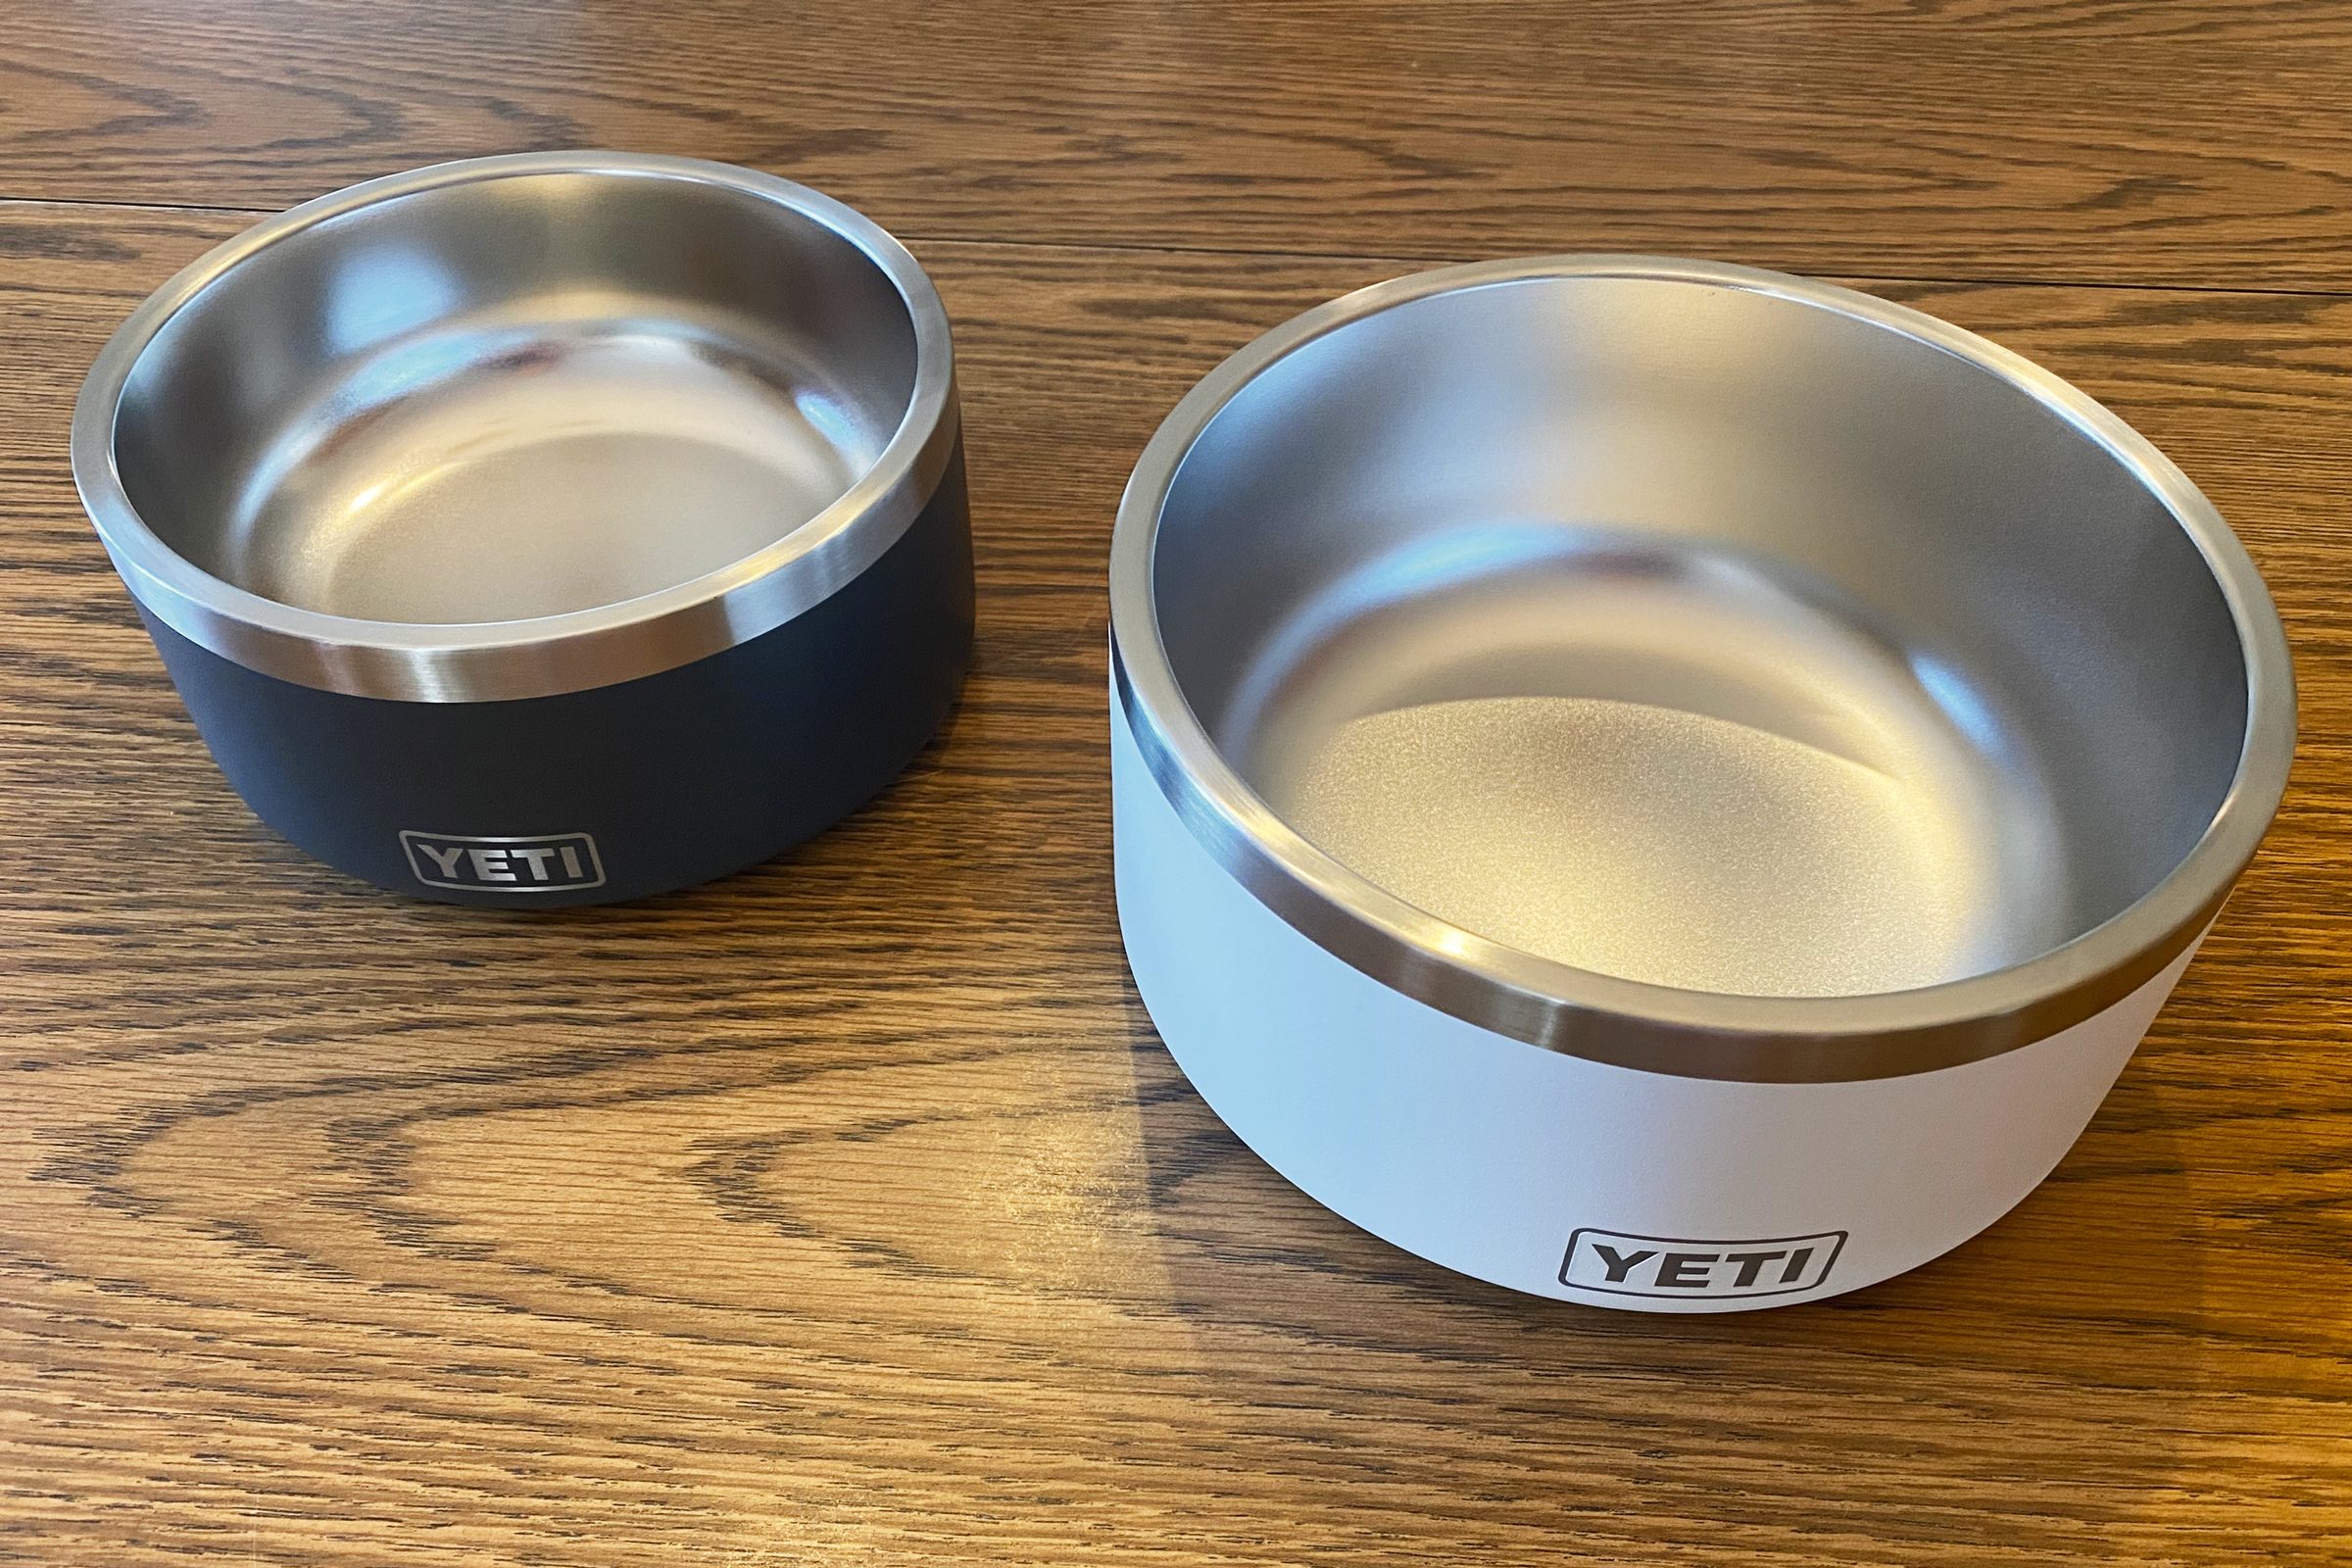 YETI® Dog Bowl - Large